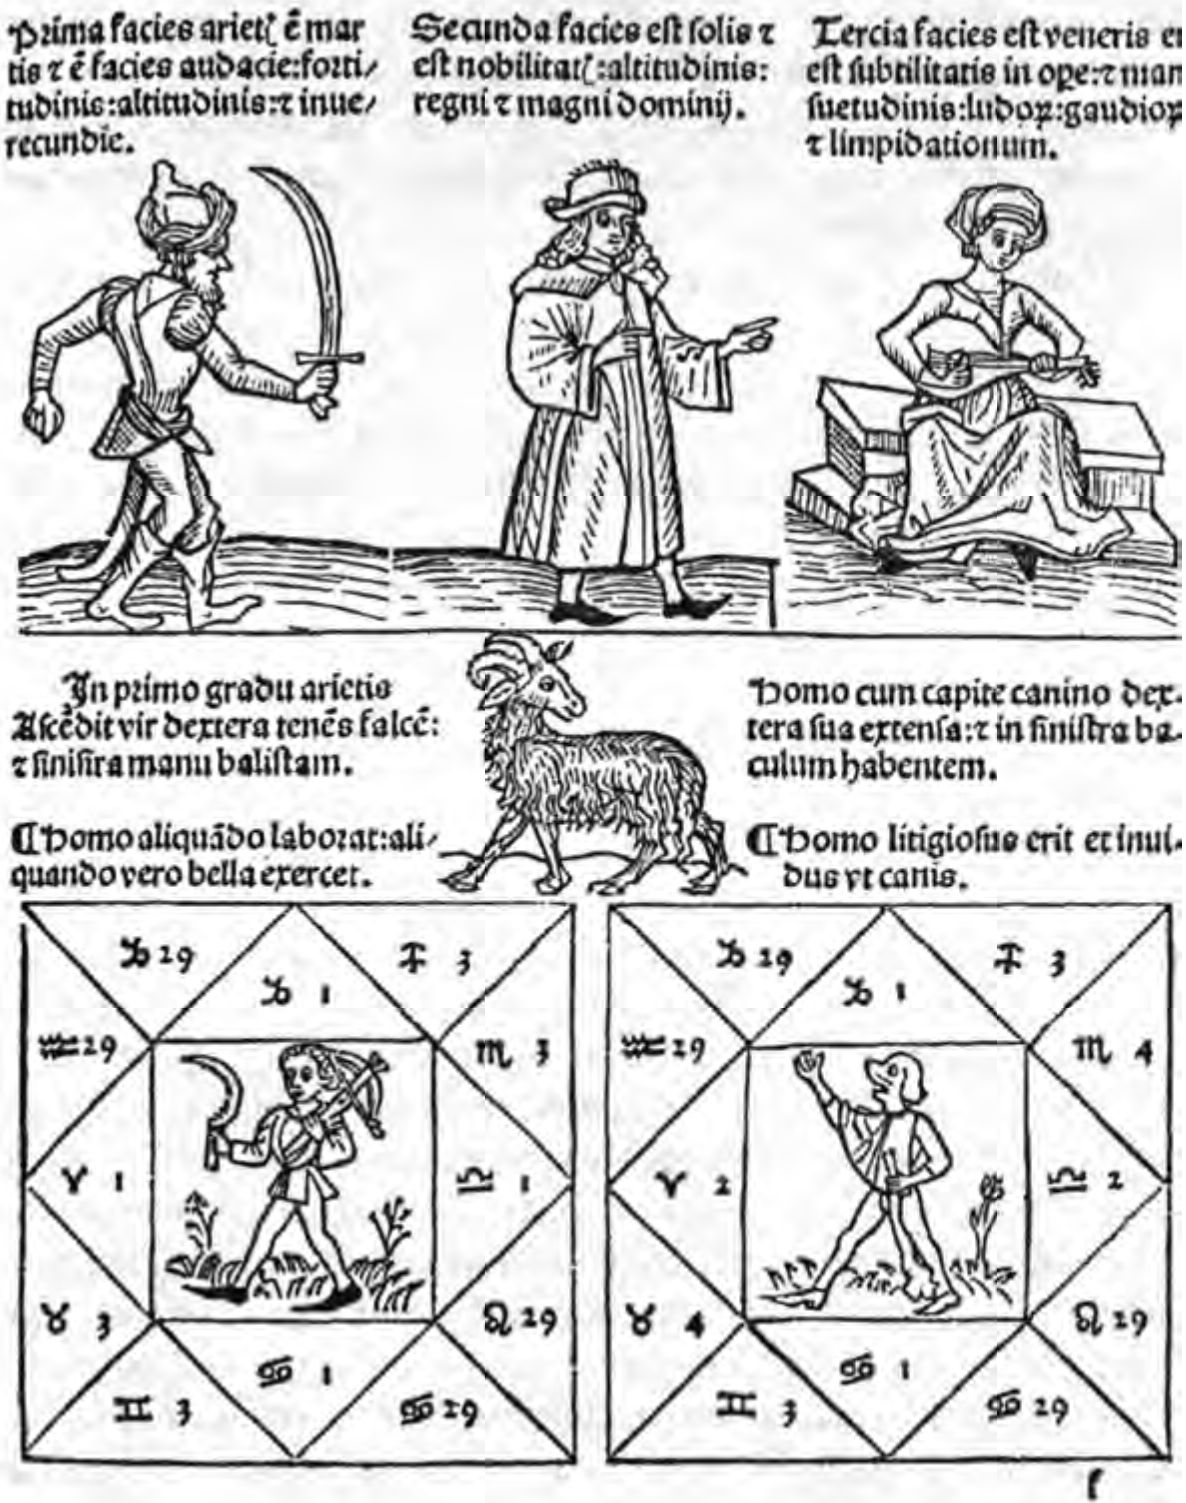 Типы гороскопов. Иоганн Энгель, 1488 г. Эти небольшие изображения содержат сведения о гороскопе, а также примерном характере субъекта, как, например, примечательное изображение справа: «Этот человек был вздорным и таким же гонимым, как пес». Три верхние фигуры — деканы Овна. (Британская Библиотека)